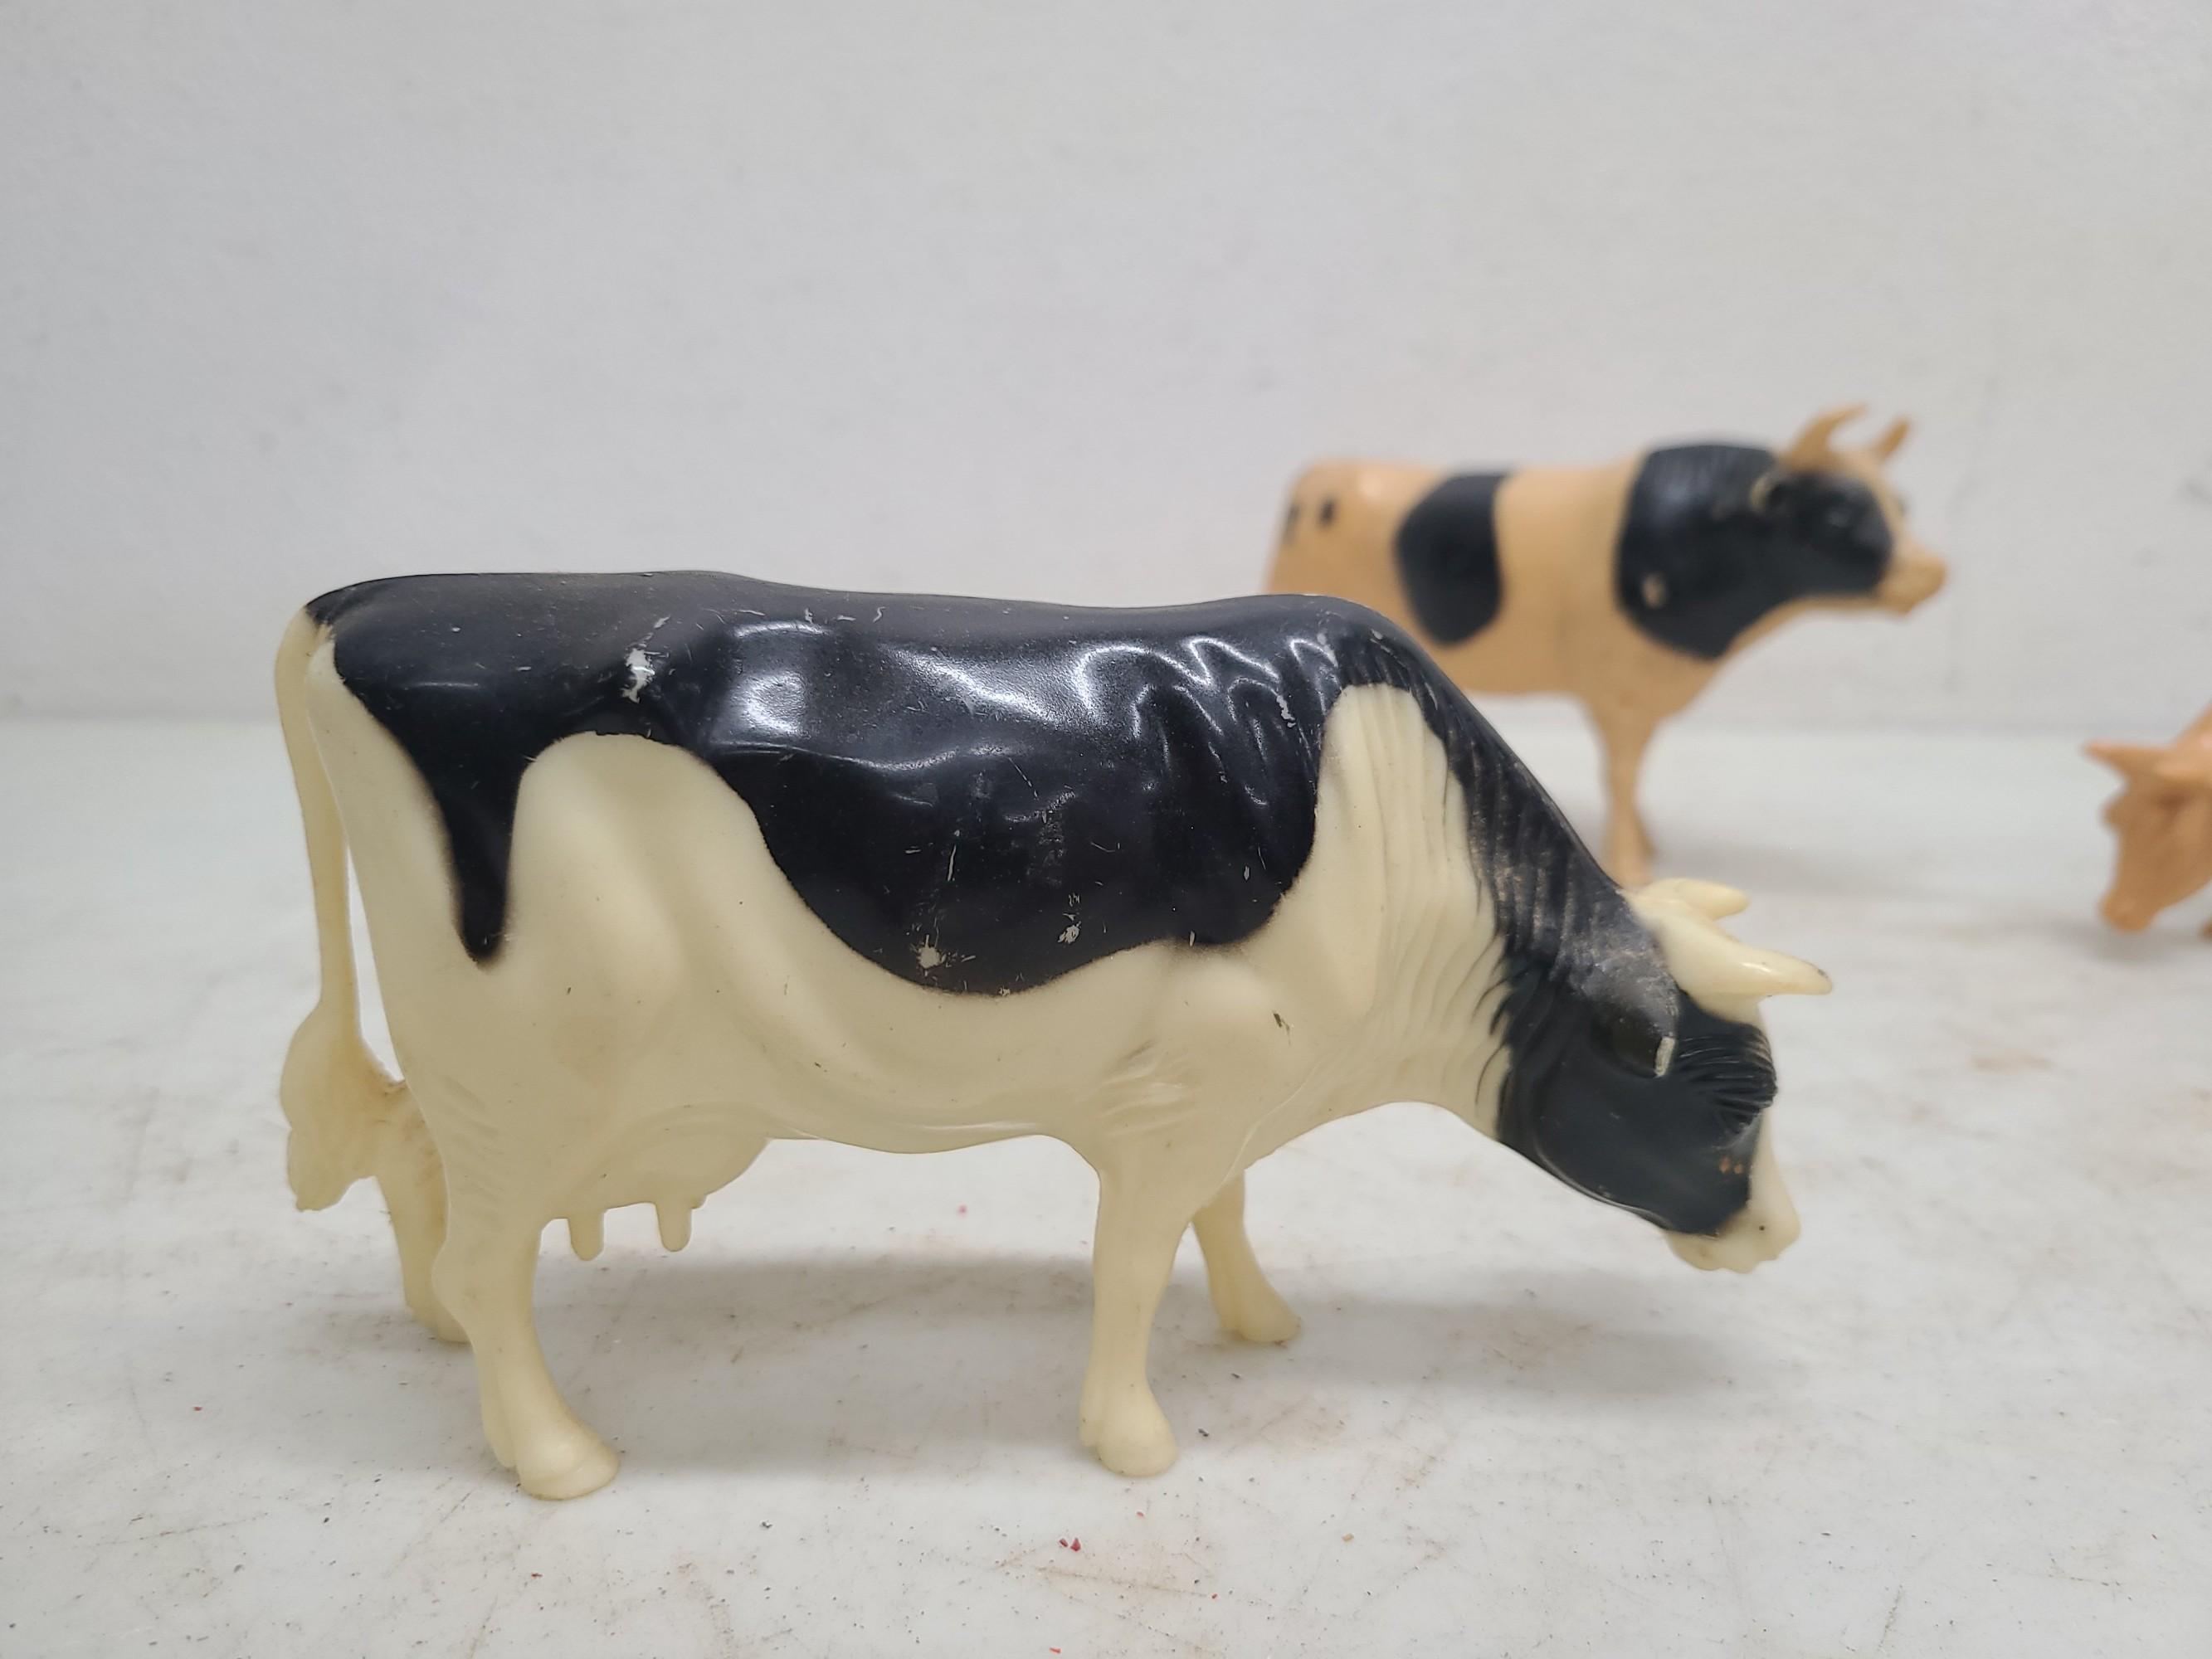 4 Nylint & Hartland Toy Cows